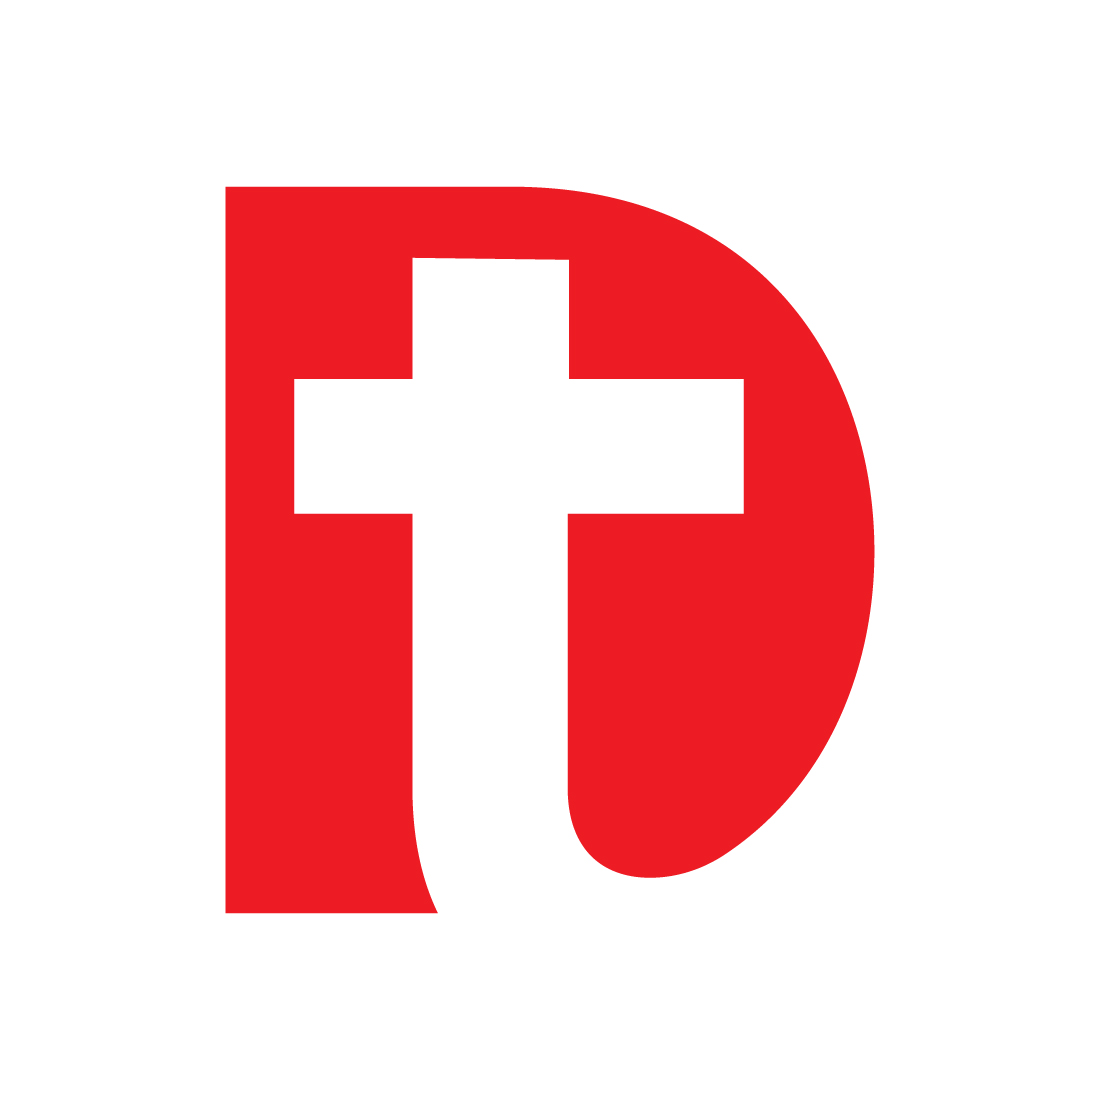 Health Letter DT logo design preview image.